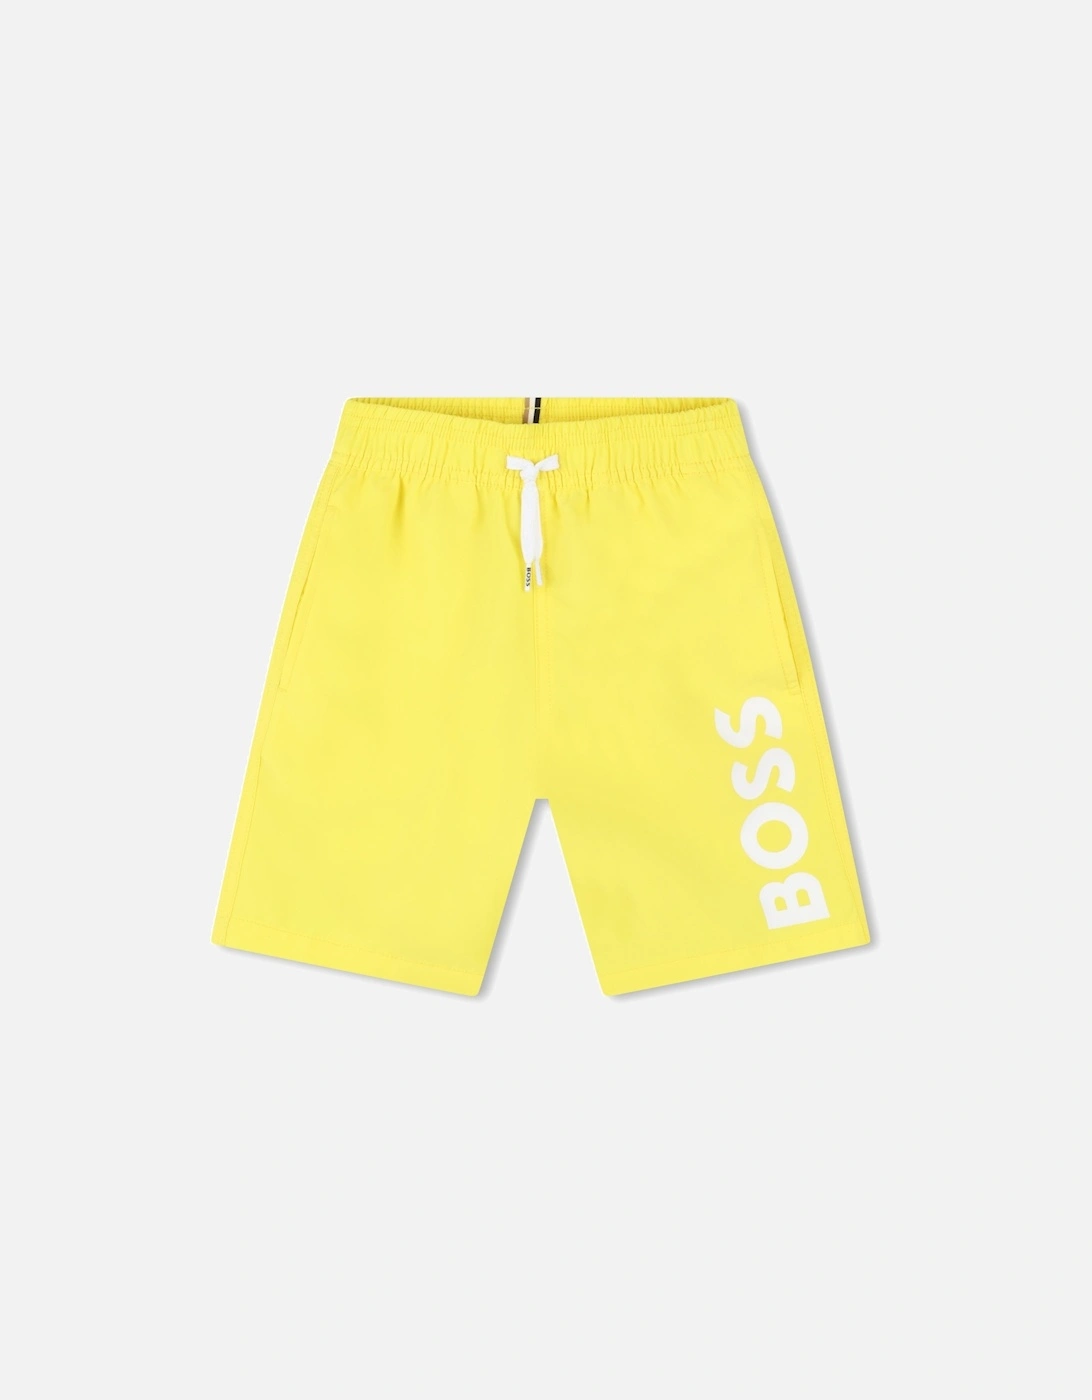 Juniors Swimming Shorts (Yellow), 5 of 4